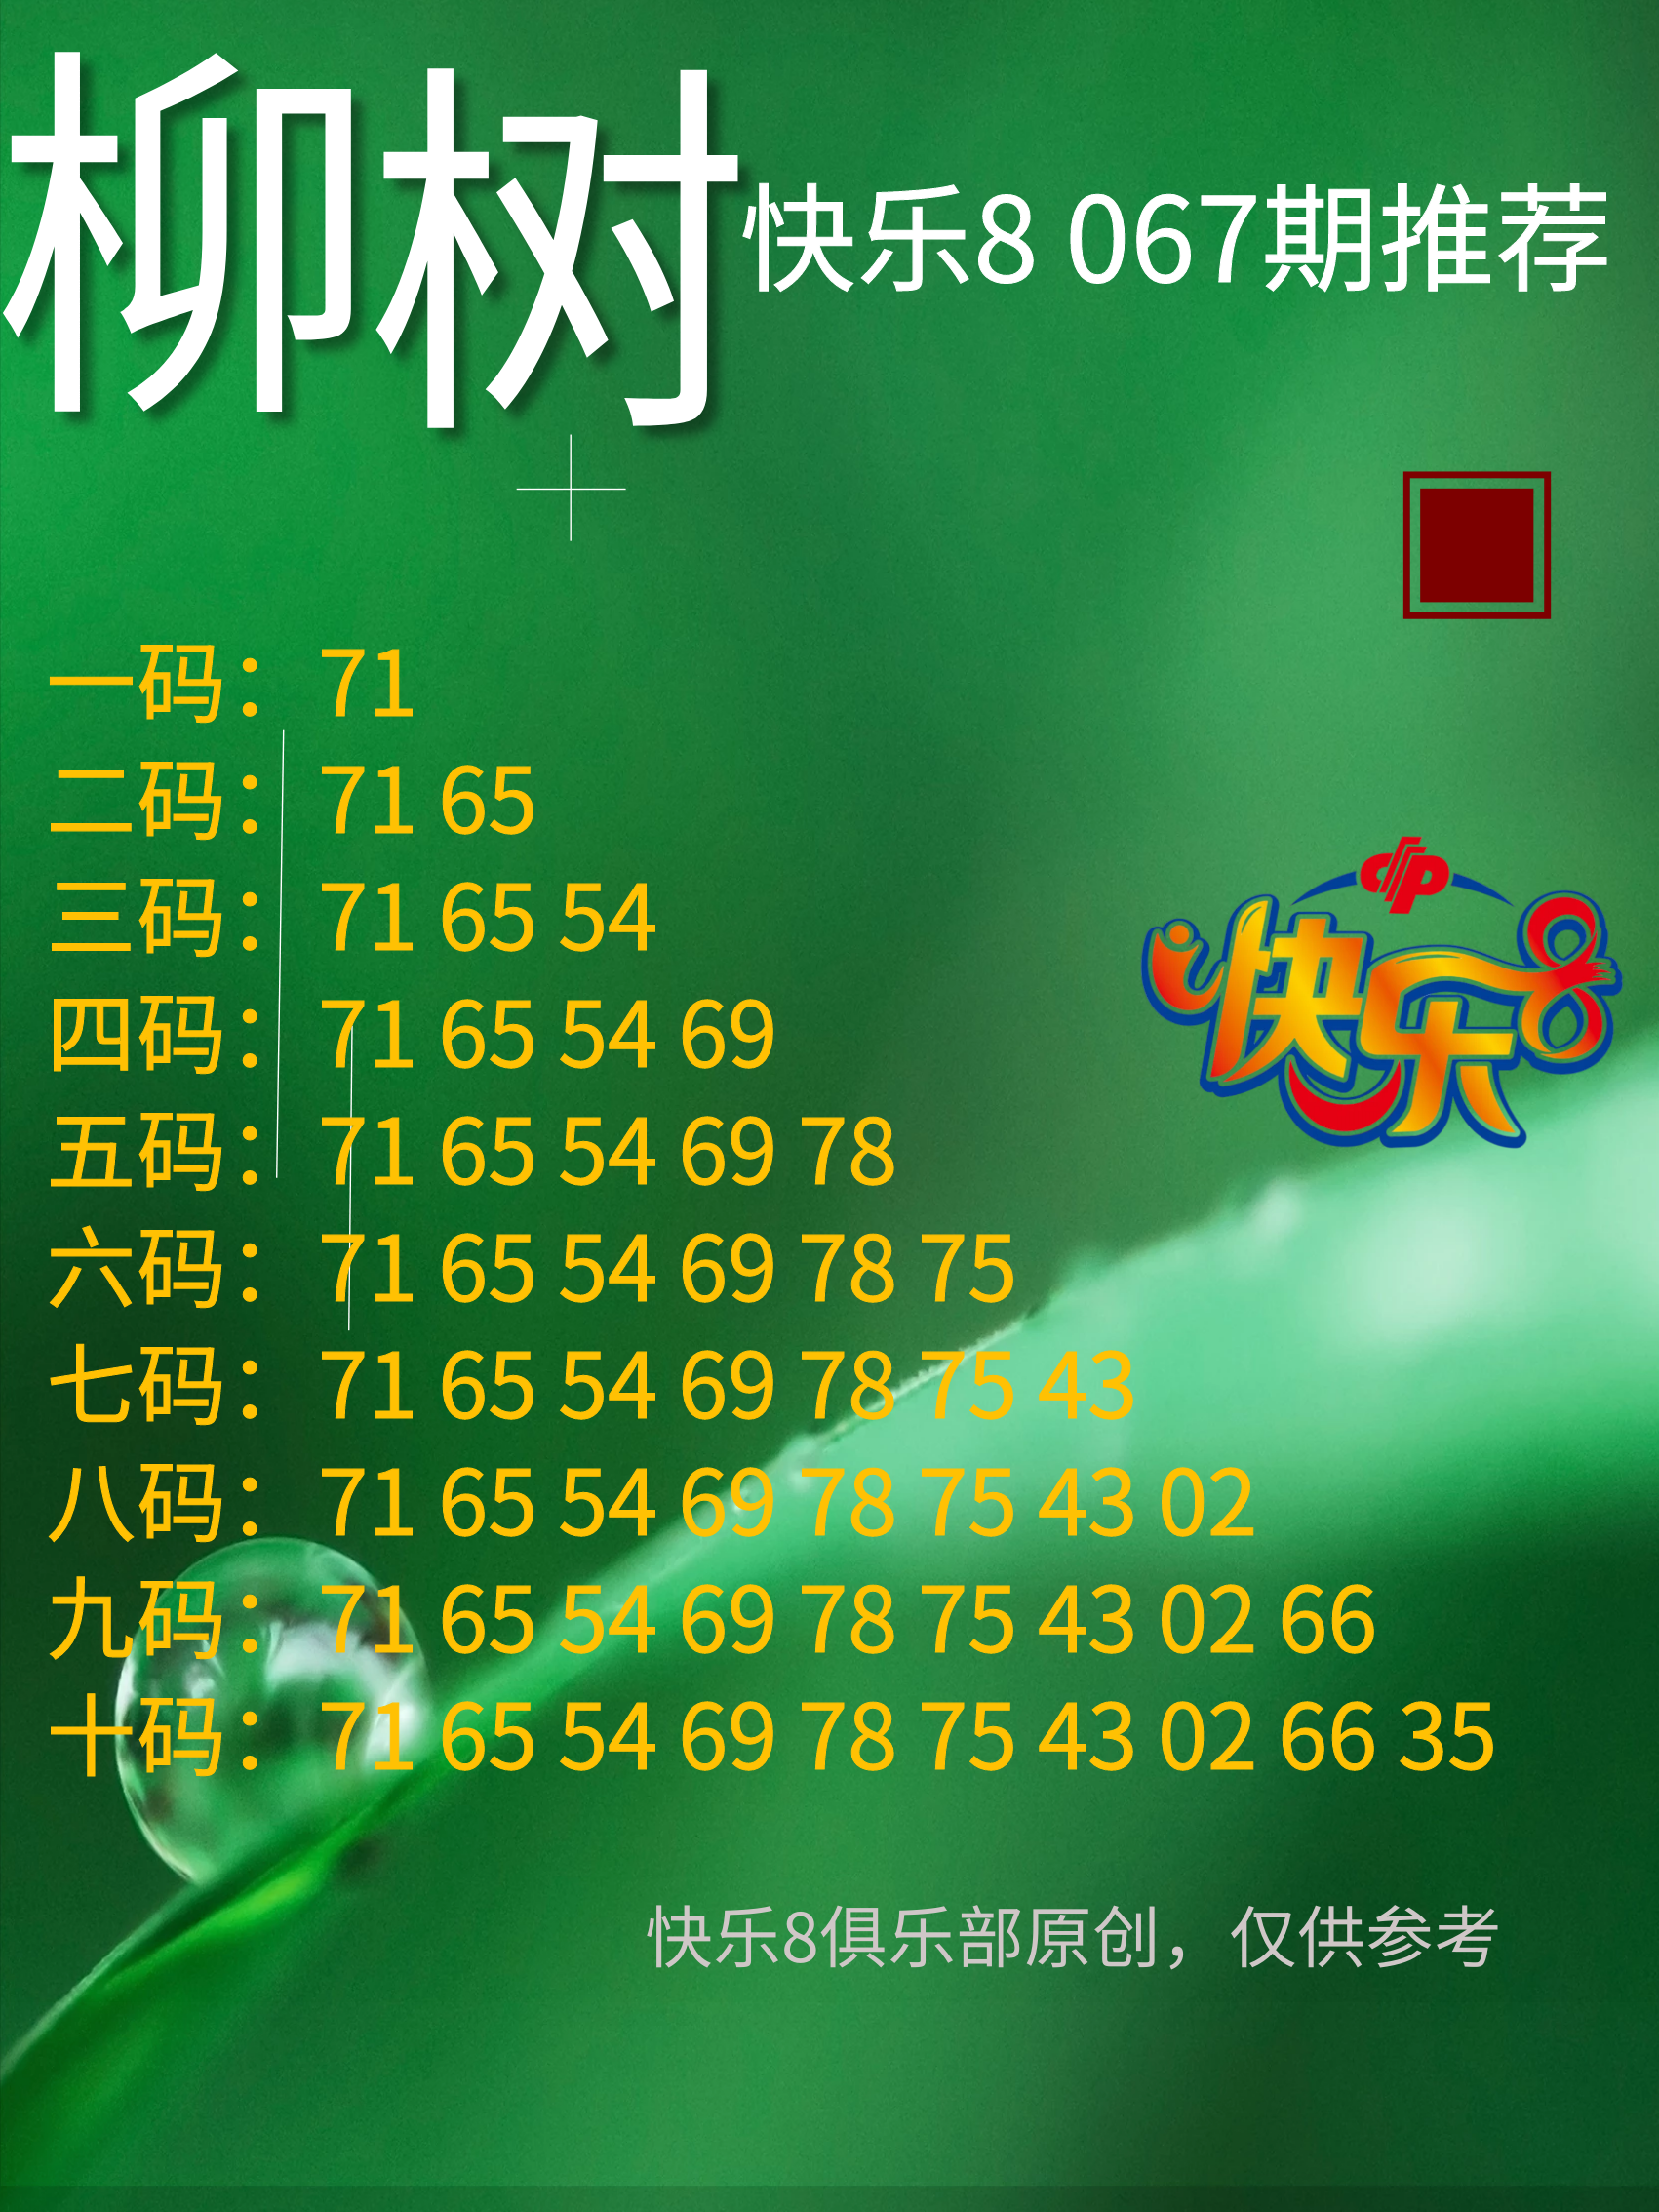 23067期快乐8【柳树】图谜 ！